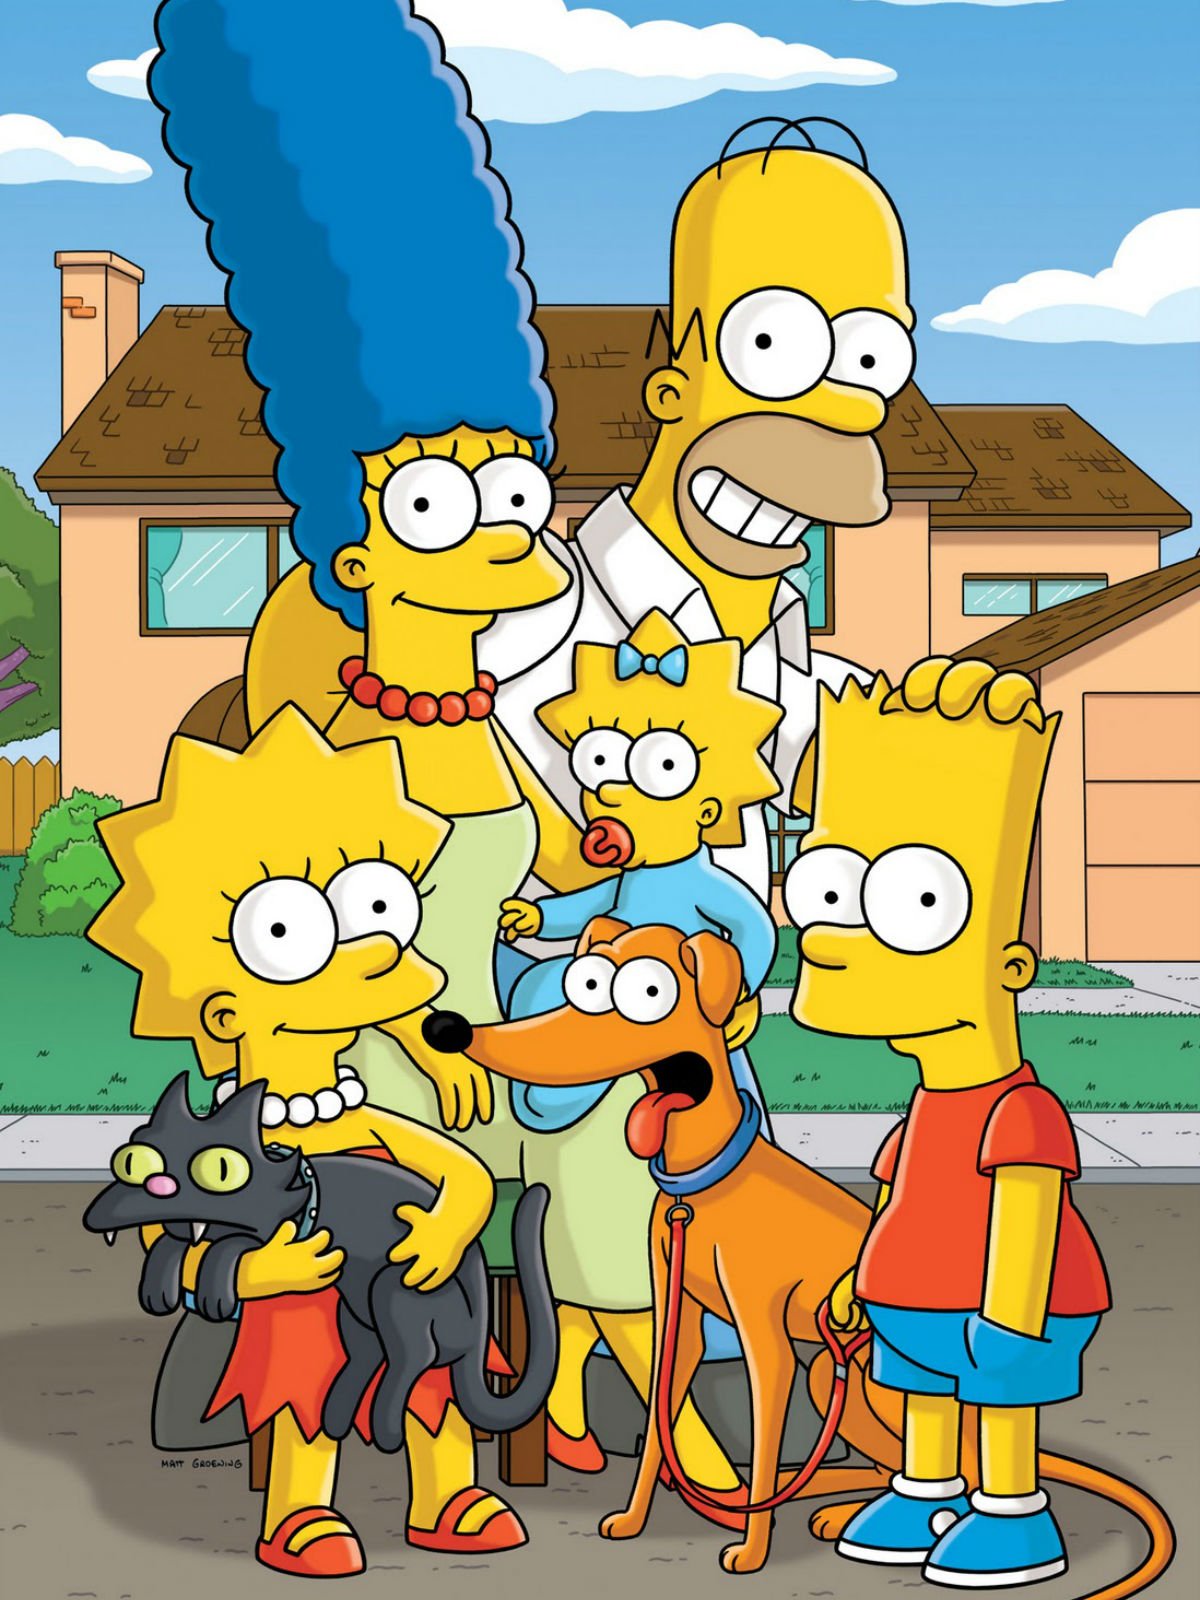 Los Simpson (1989) - Filmaffinity